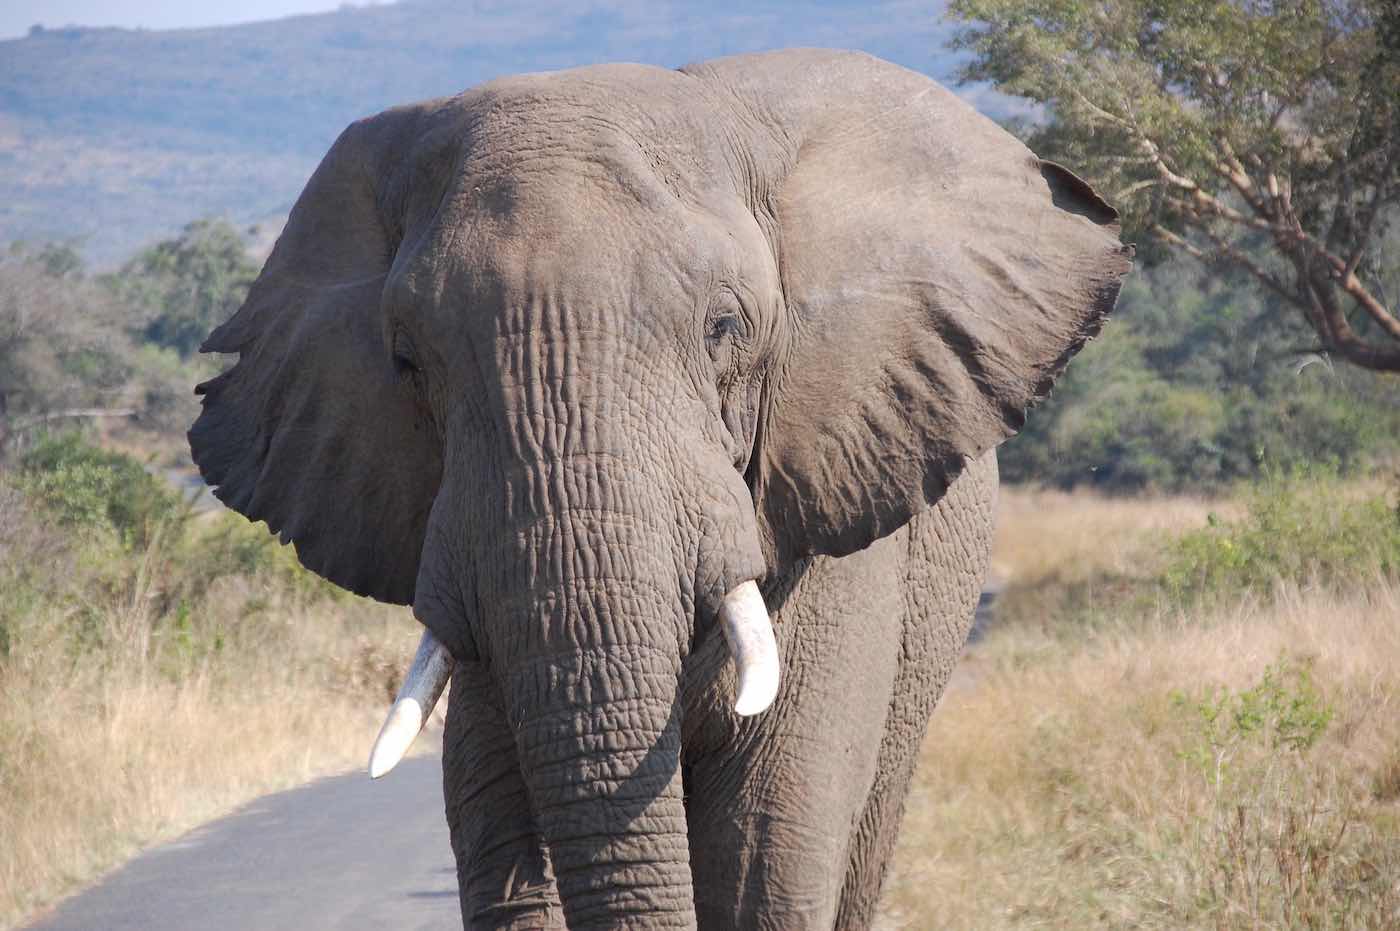 Afrikanischer Elefant schlägt mit den Ohren, um sich abzukühlen